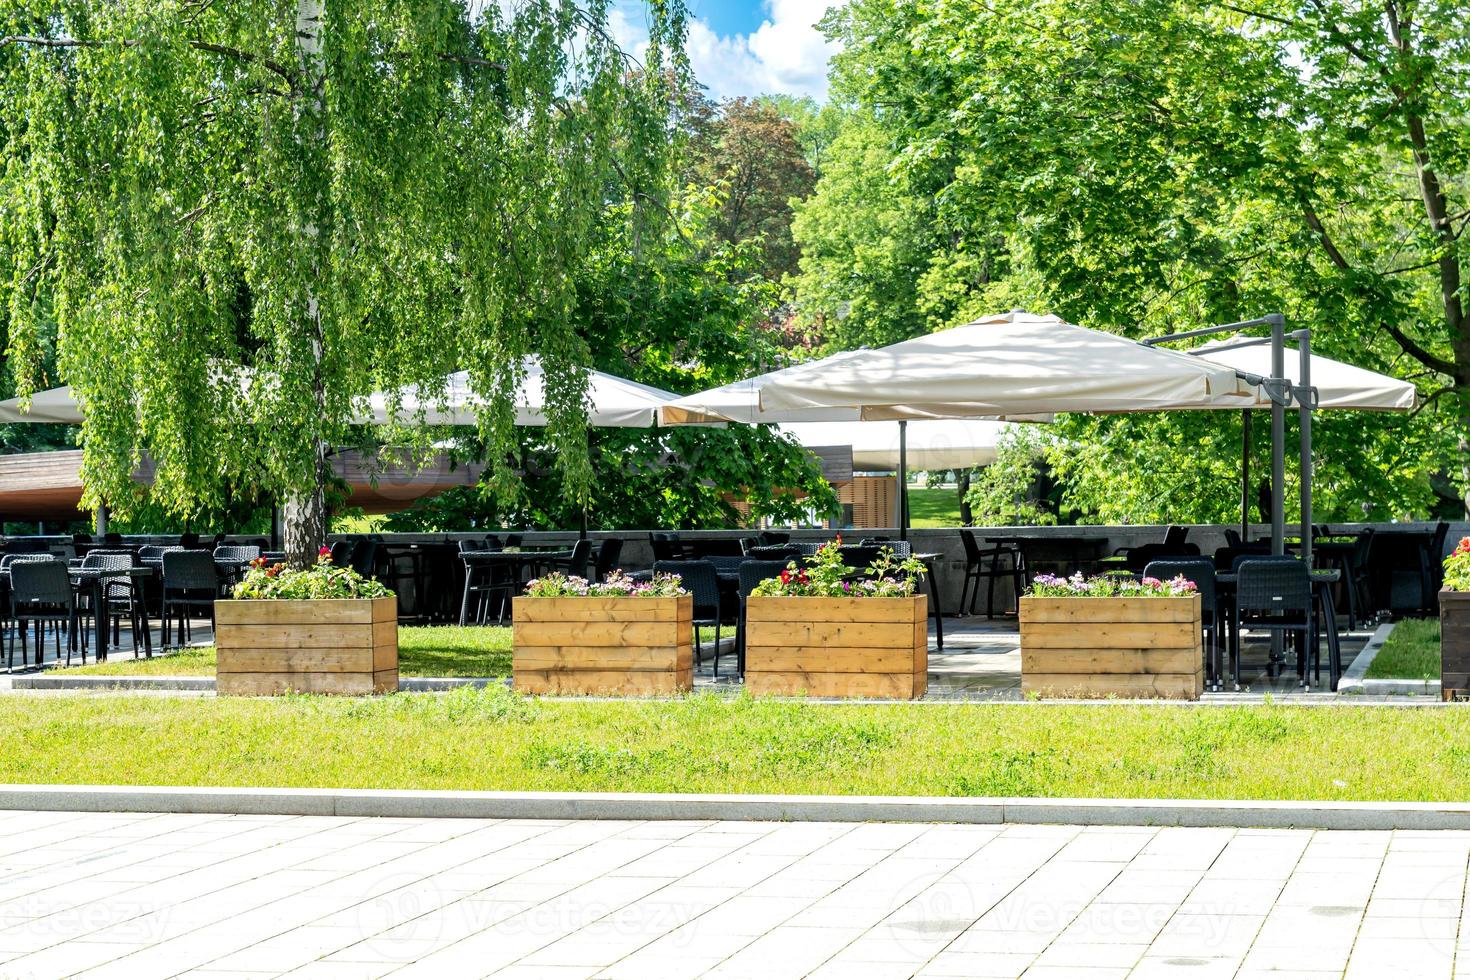 interior de café callejero de verano en el parque de la ciudad verde, adornado con flores y elementos decorativos a la sombra de los árboles foto